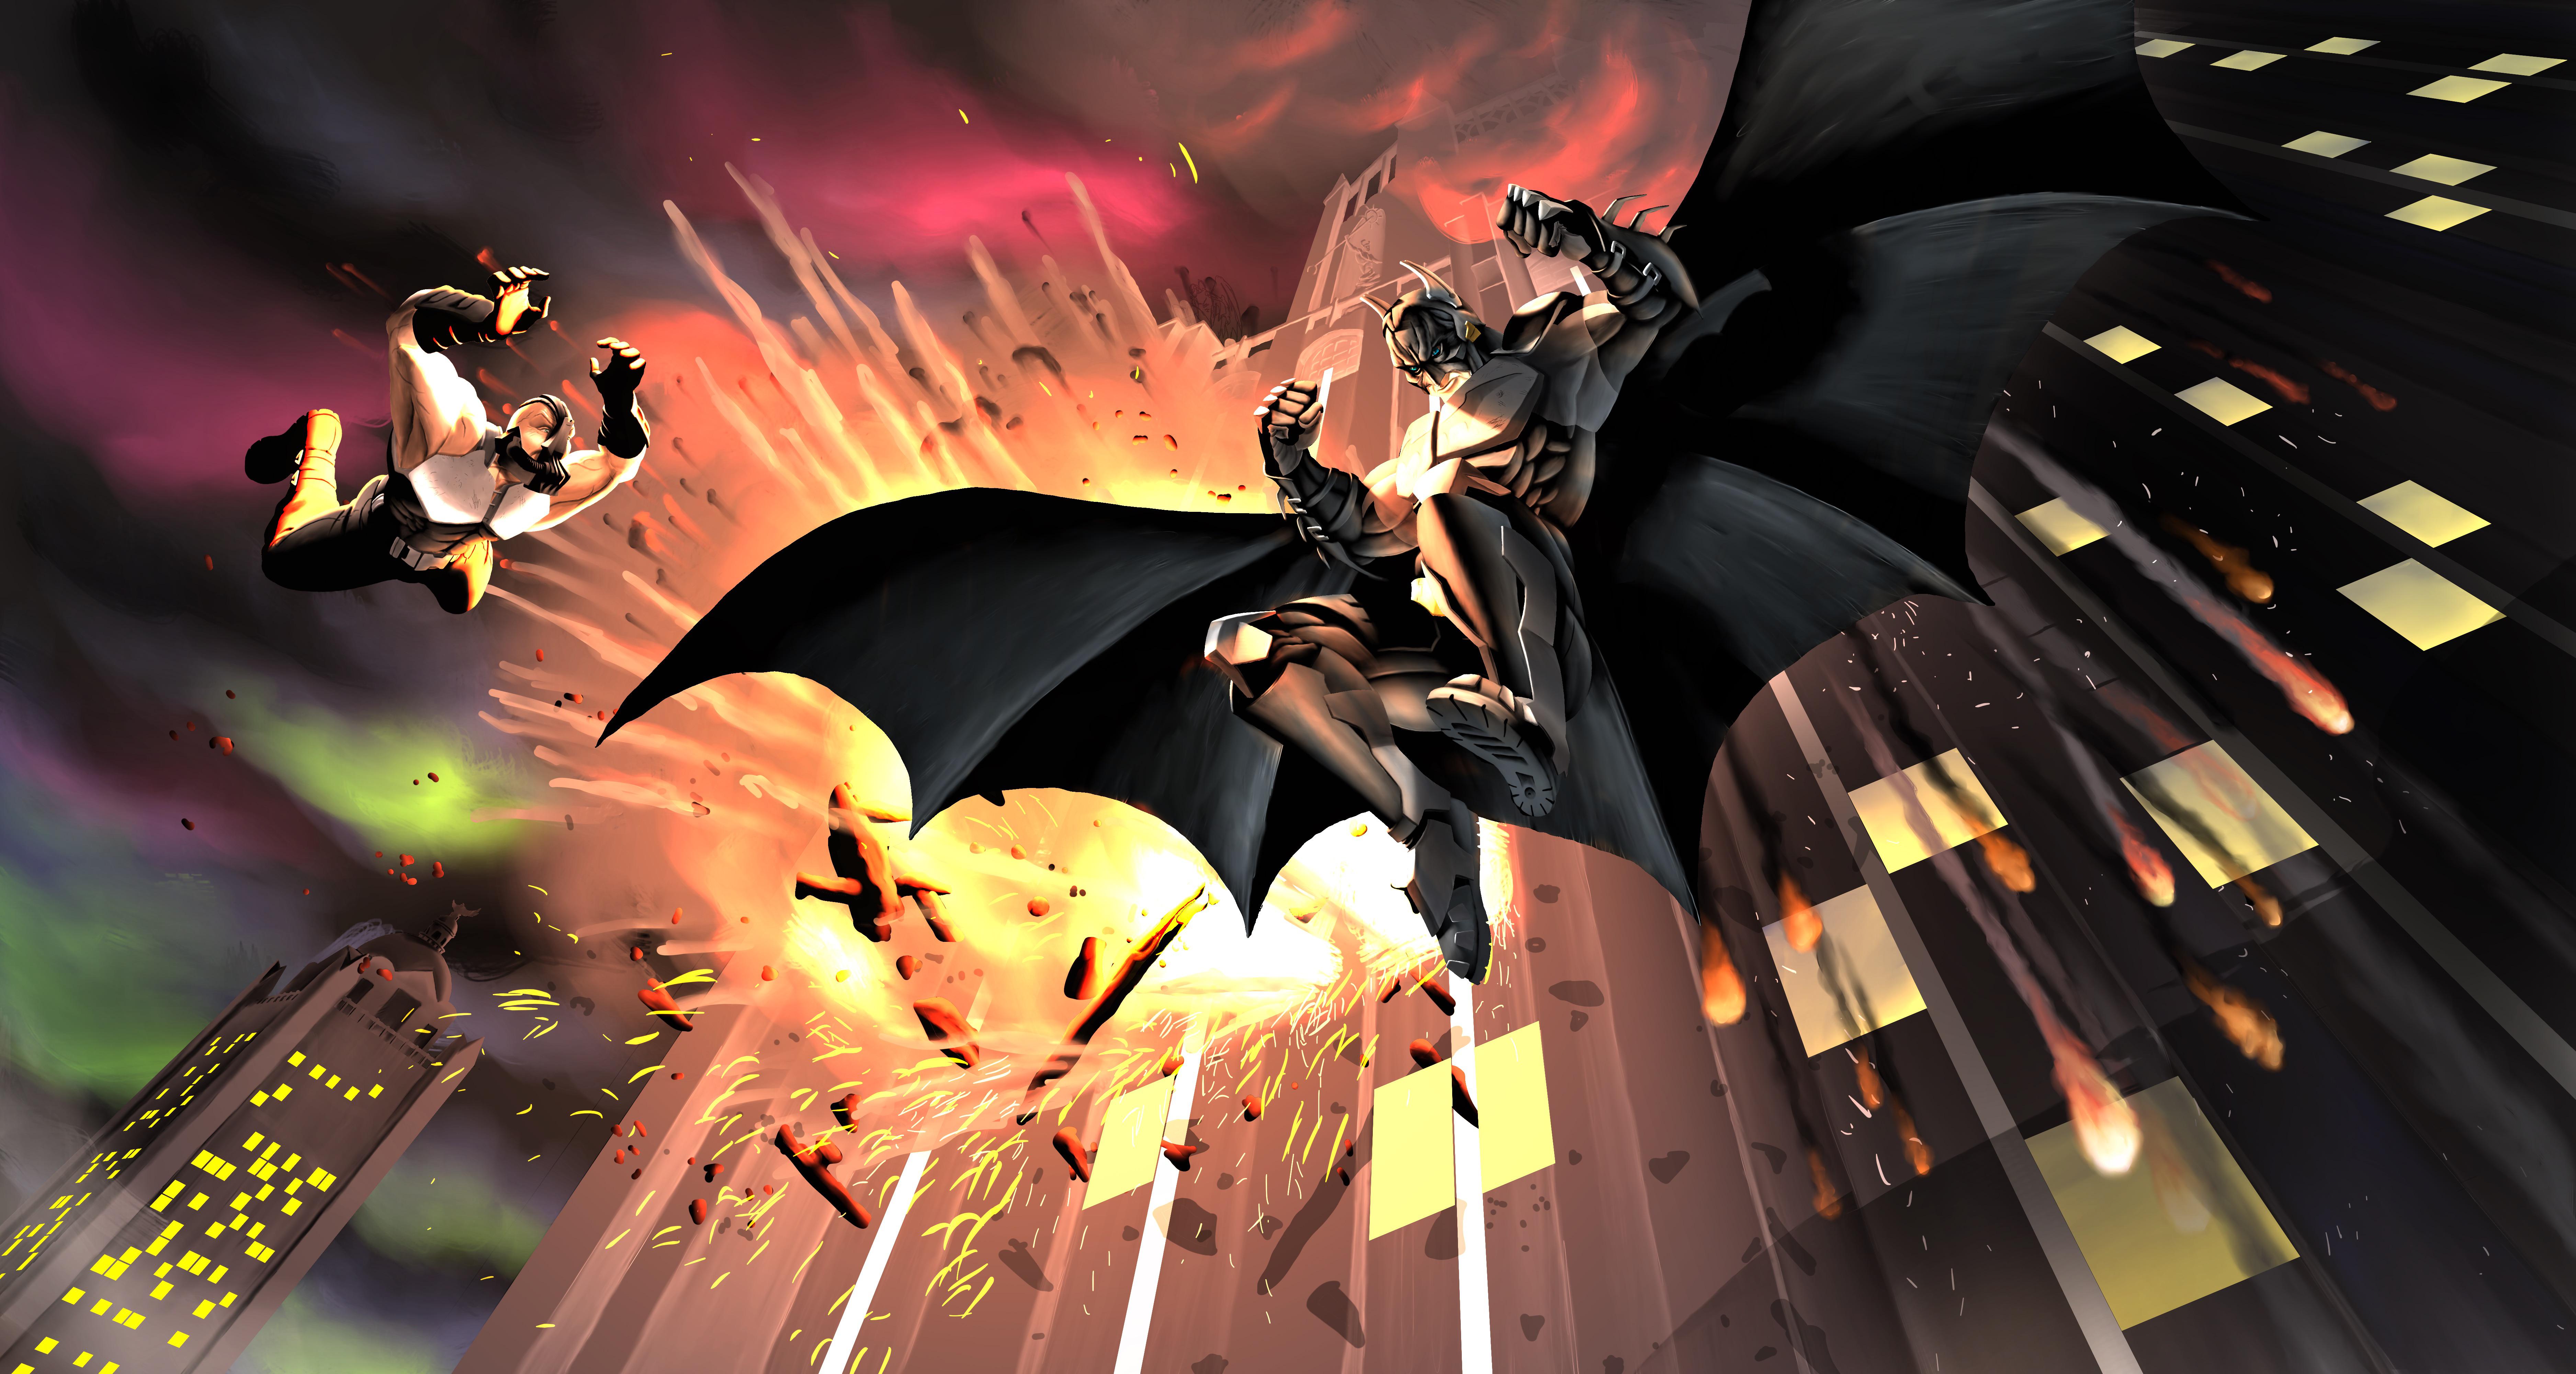 Descarga gratuita de fondo de pantalla para móvil de Historietas, The Batman, Dc Comics, Bane (Dc Cómics).